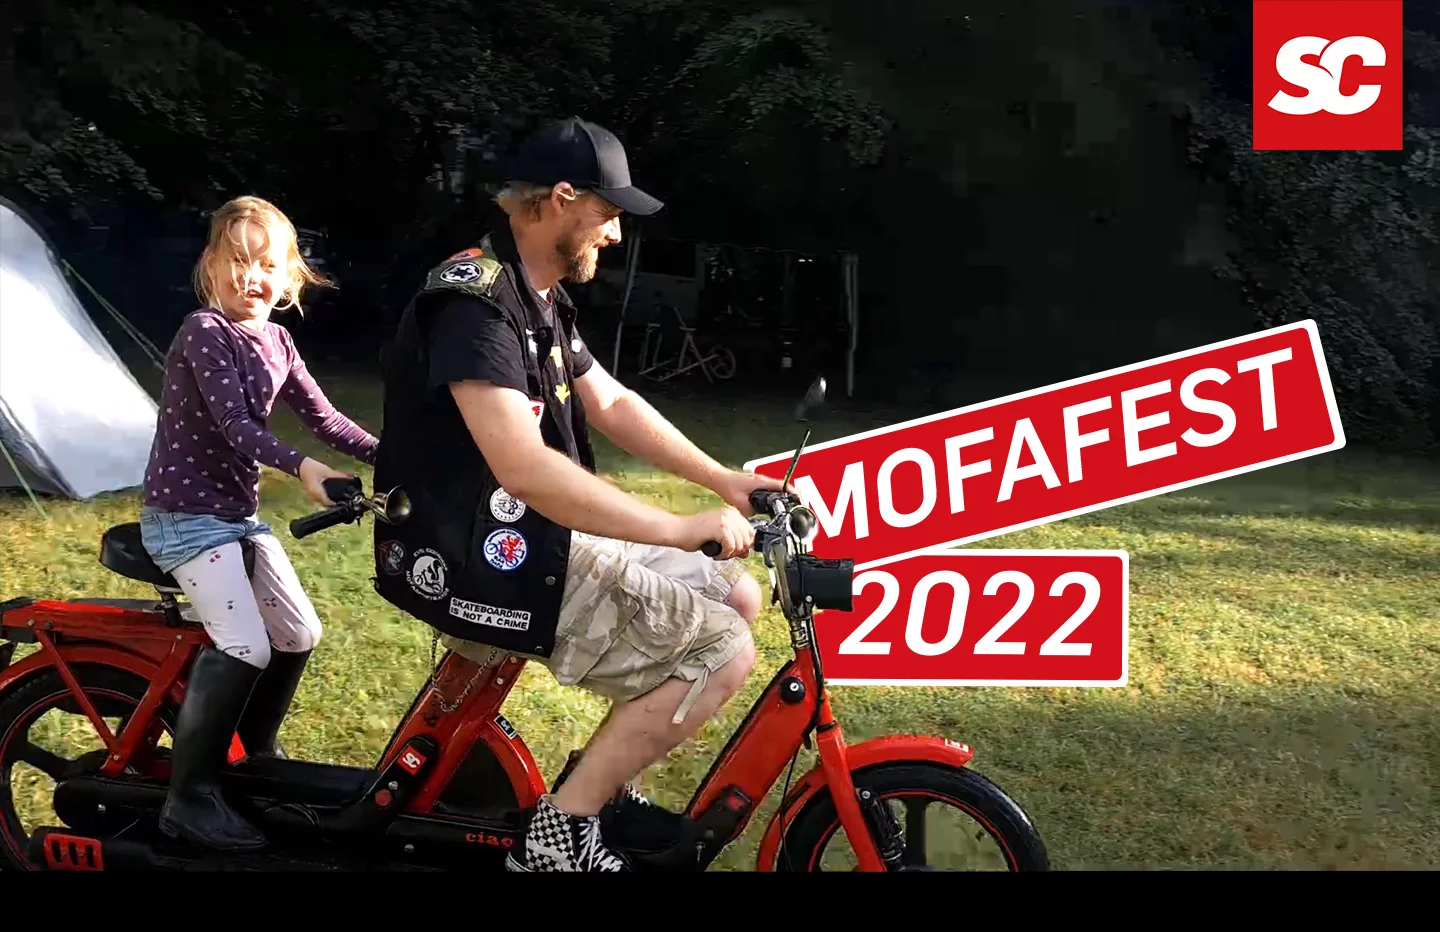 Mofafest 2022 - Mofa in seiner ganzen Pracht